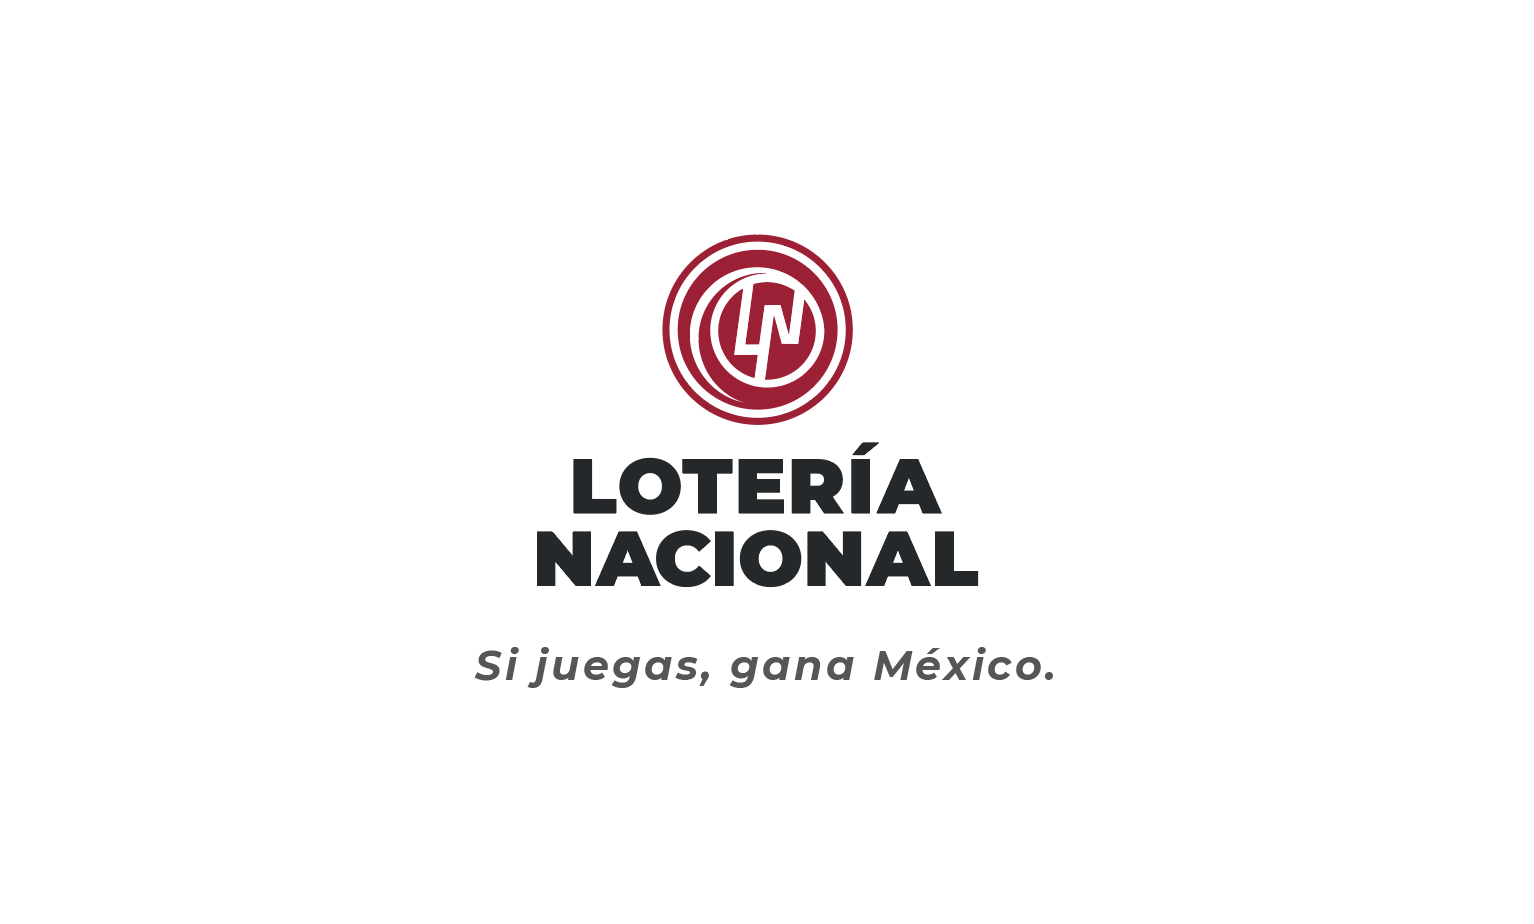 Logotipo de Lotería nacional